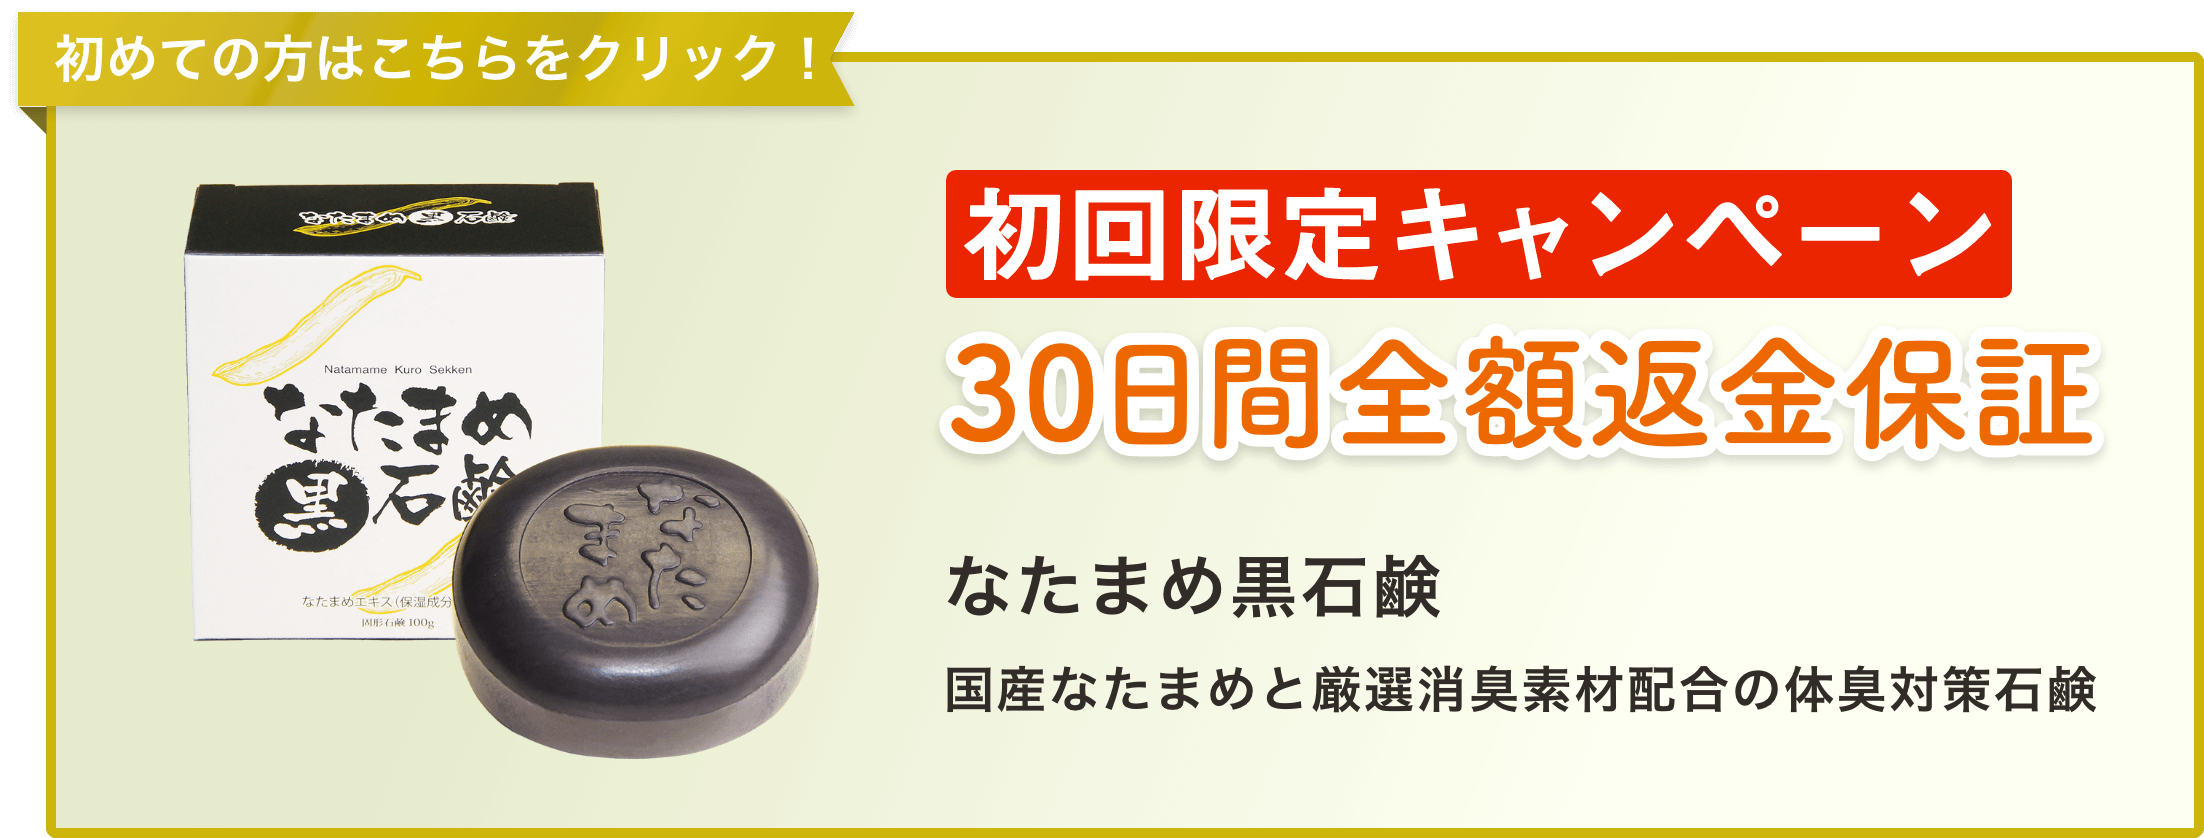 594円 卸売 石鹸 固形石鹸 なた豆 石けん 80g 国産 なた豆石けん 3個